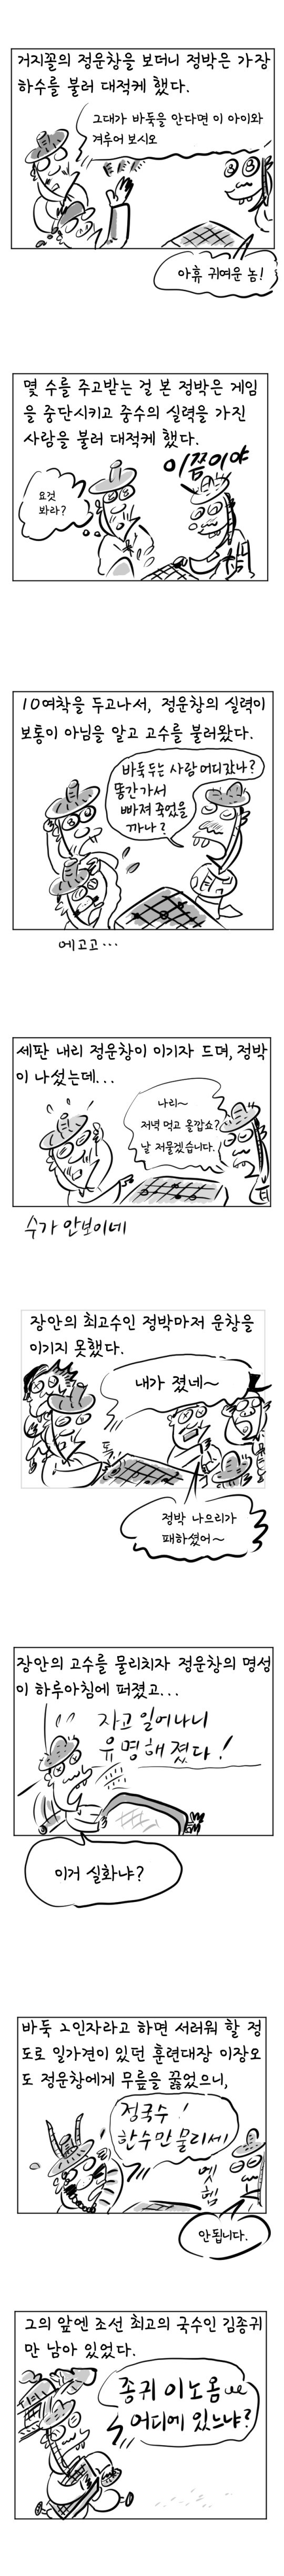 [역사툰] 史(사)람 이야기 5화: 조선 알파고, 정운창
